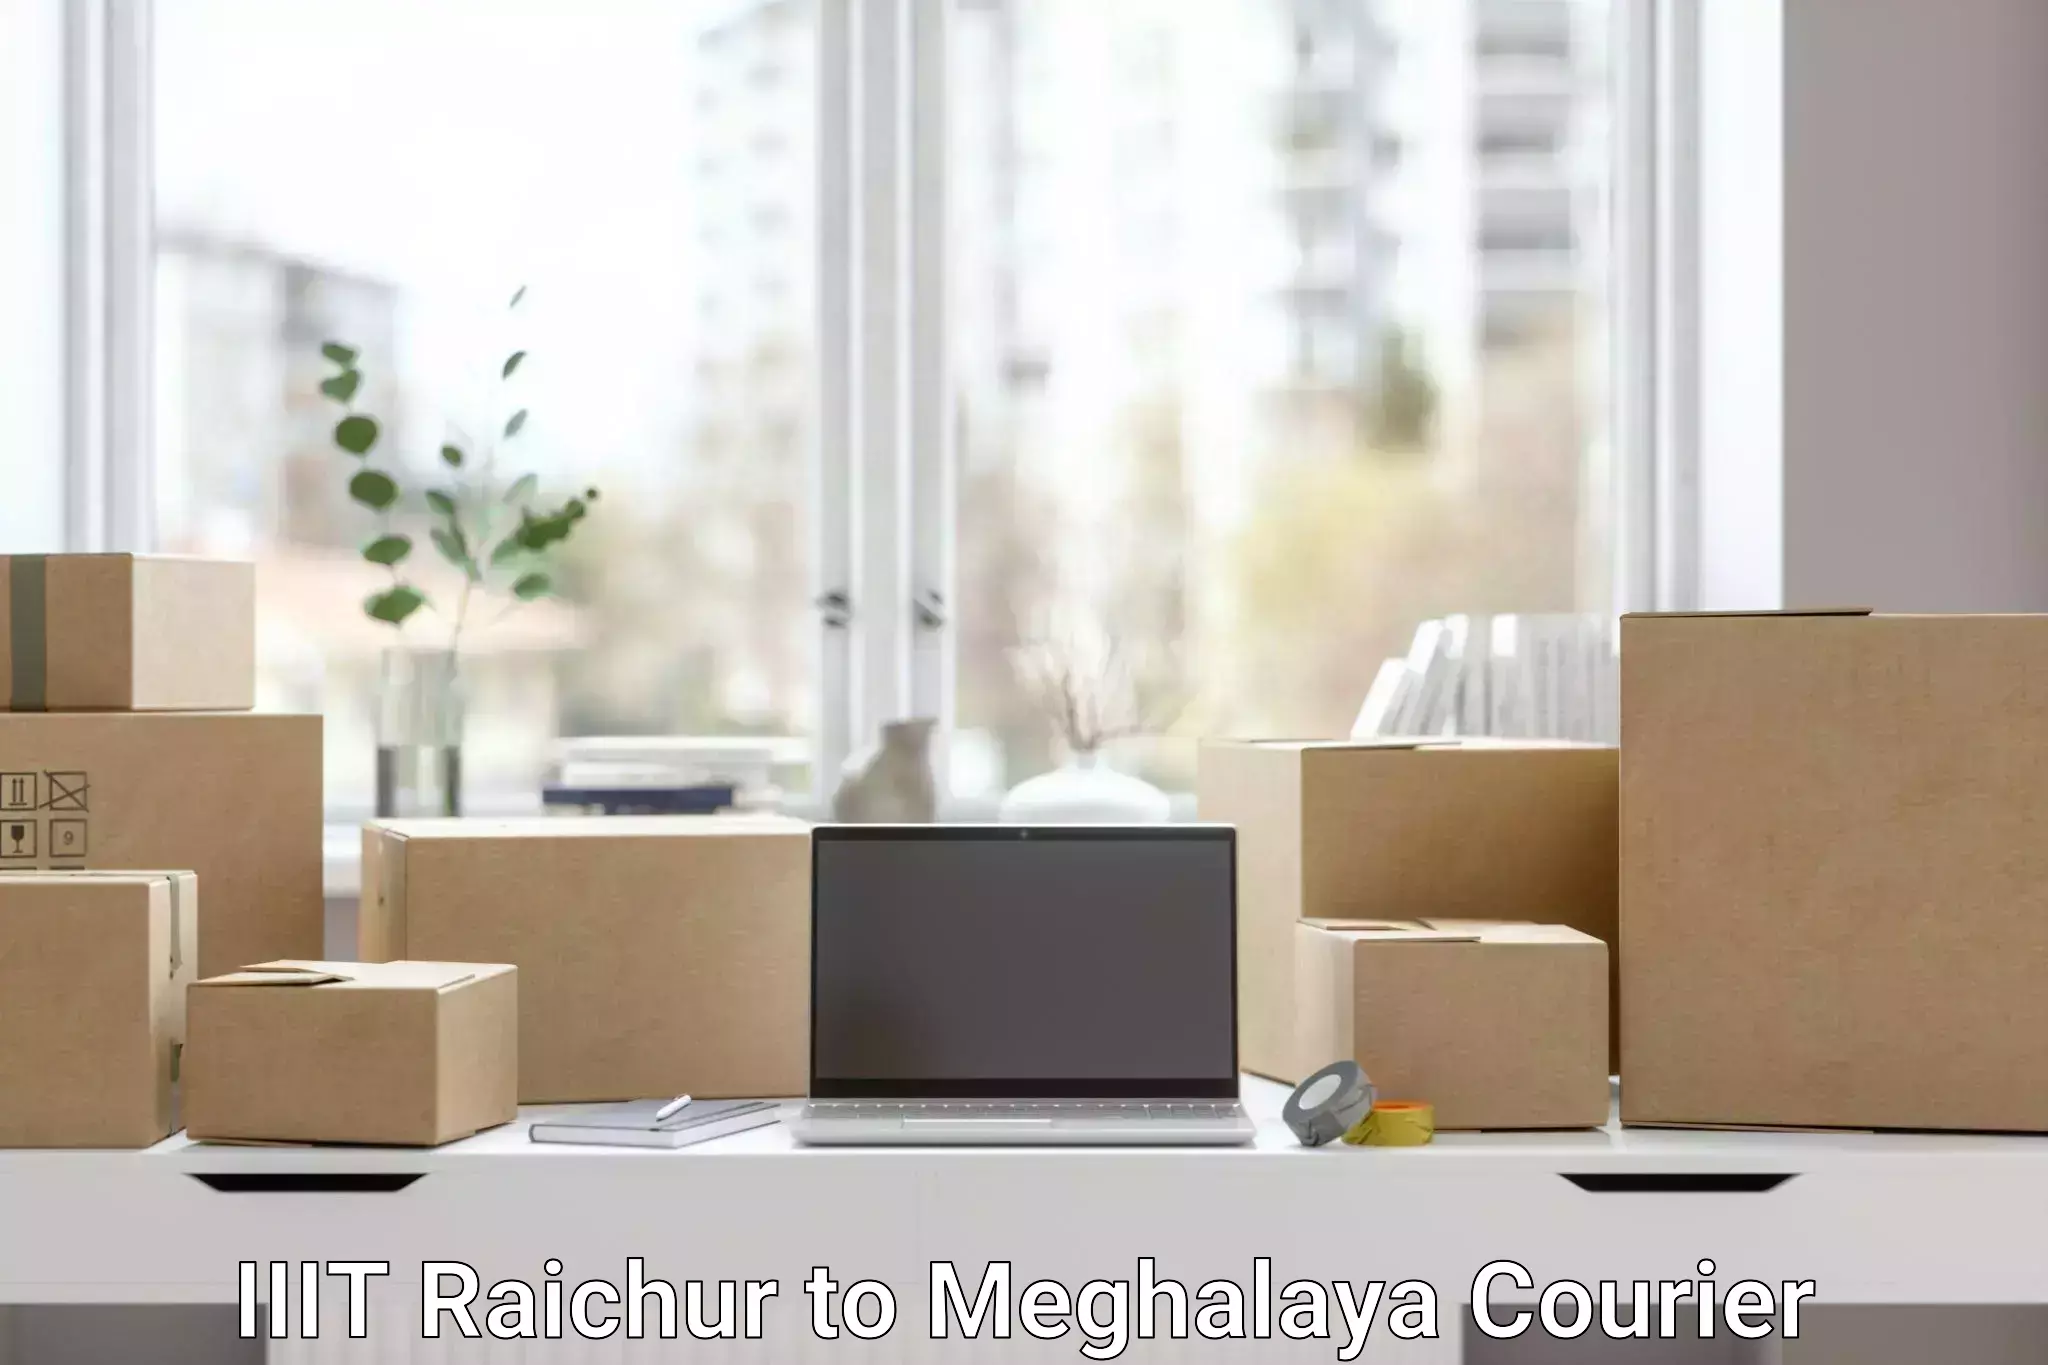 Heavy parcel delivery IIIT Raichur to Garobadha